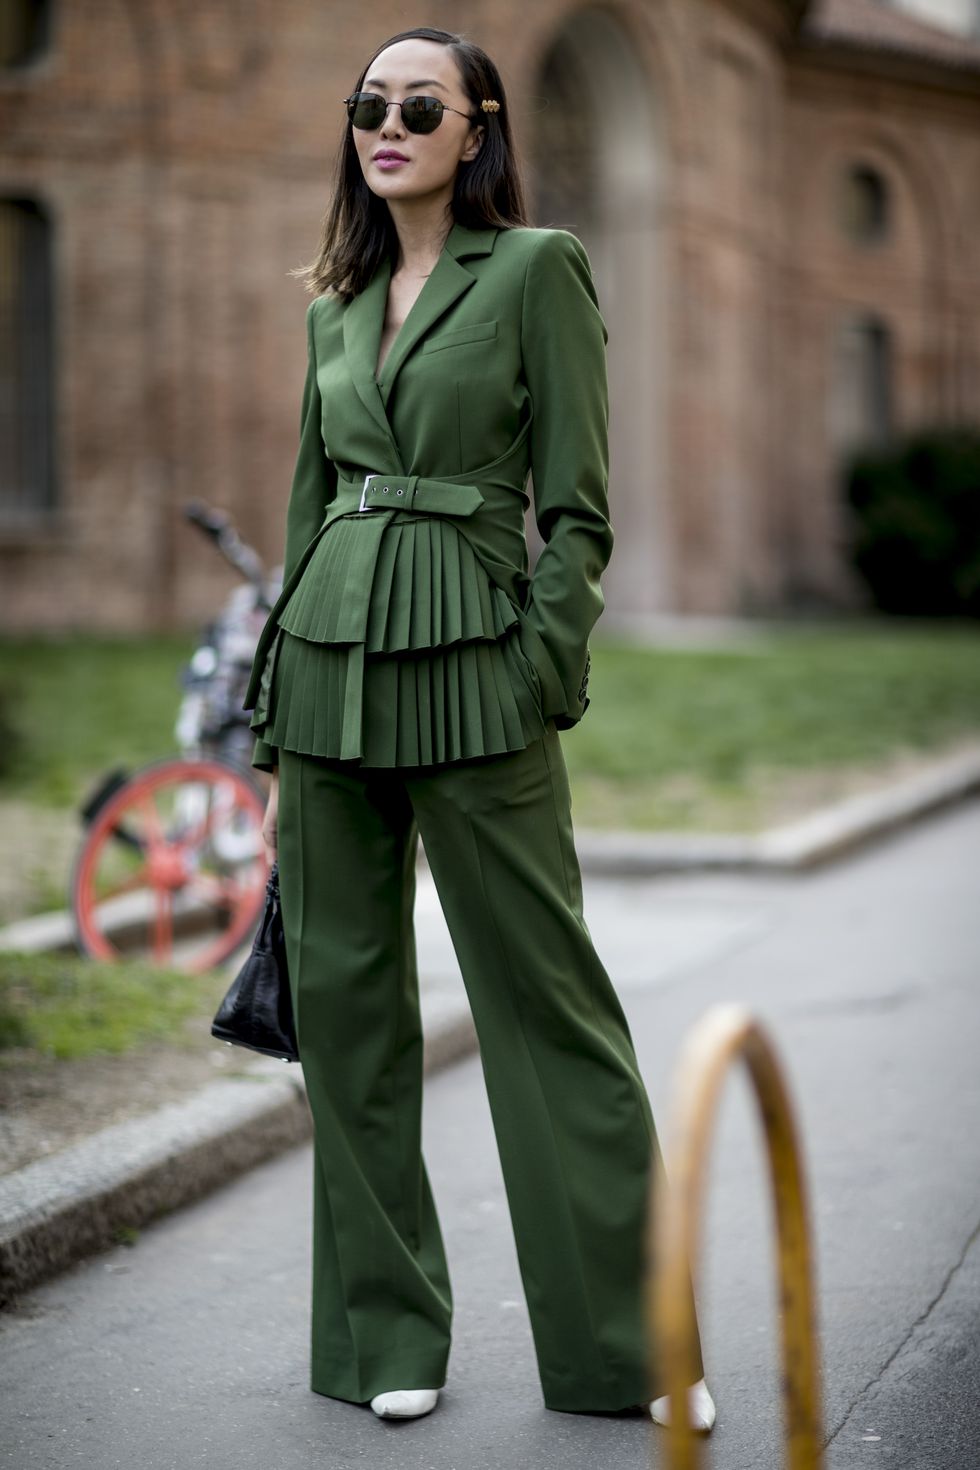 colori moda 2019, colori di tendenza 2019, outfit verde abbinamenti, verde oliva abbinamenti, outfit con pantaloni verdi, colori da abbinare al verde, come abbinare il verde scuro, come abbinare il verde militare